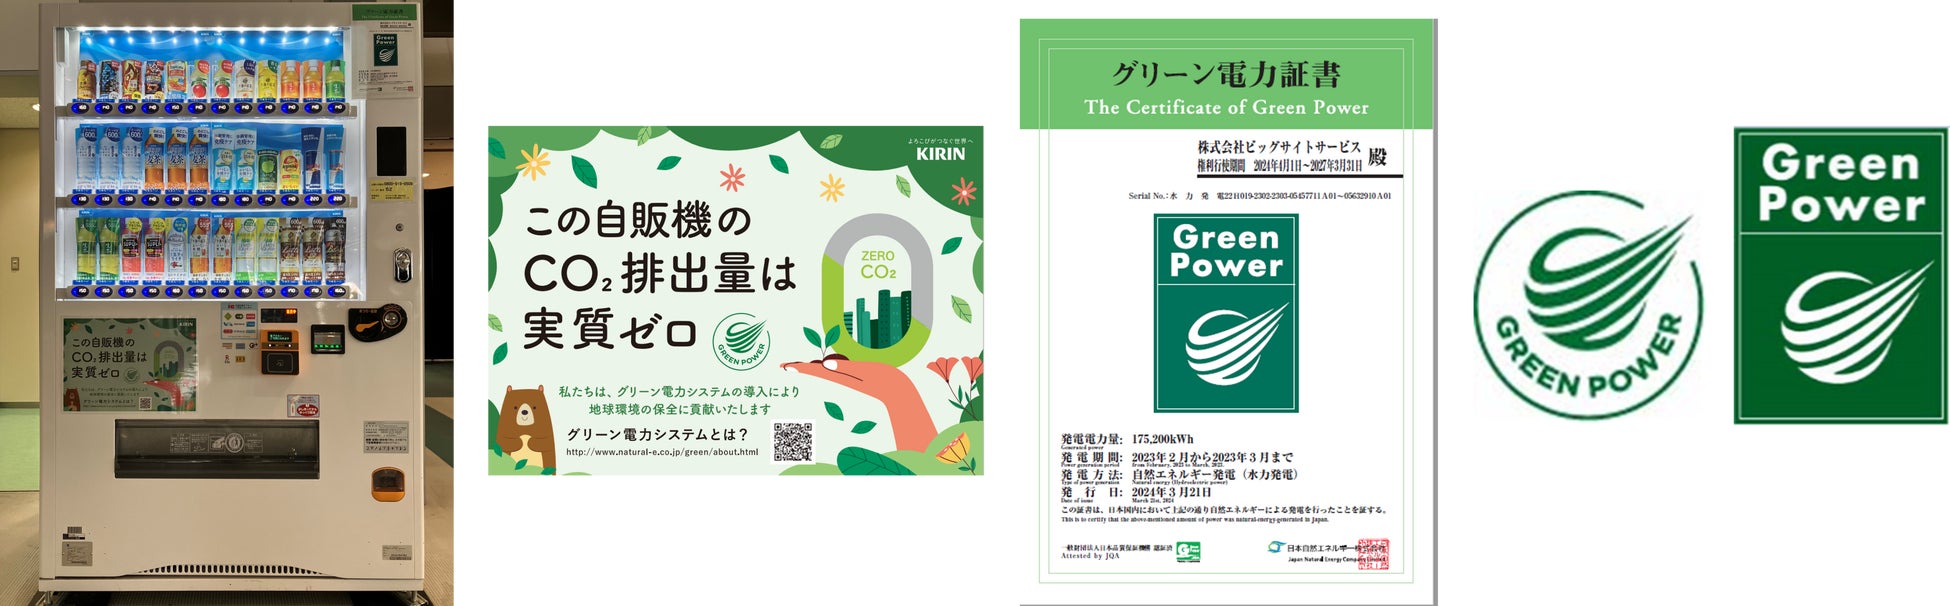 東京ビッグサイトに設置の自動販売機73台を、グリーン電力に切り替え